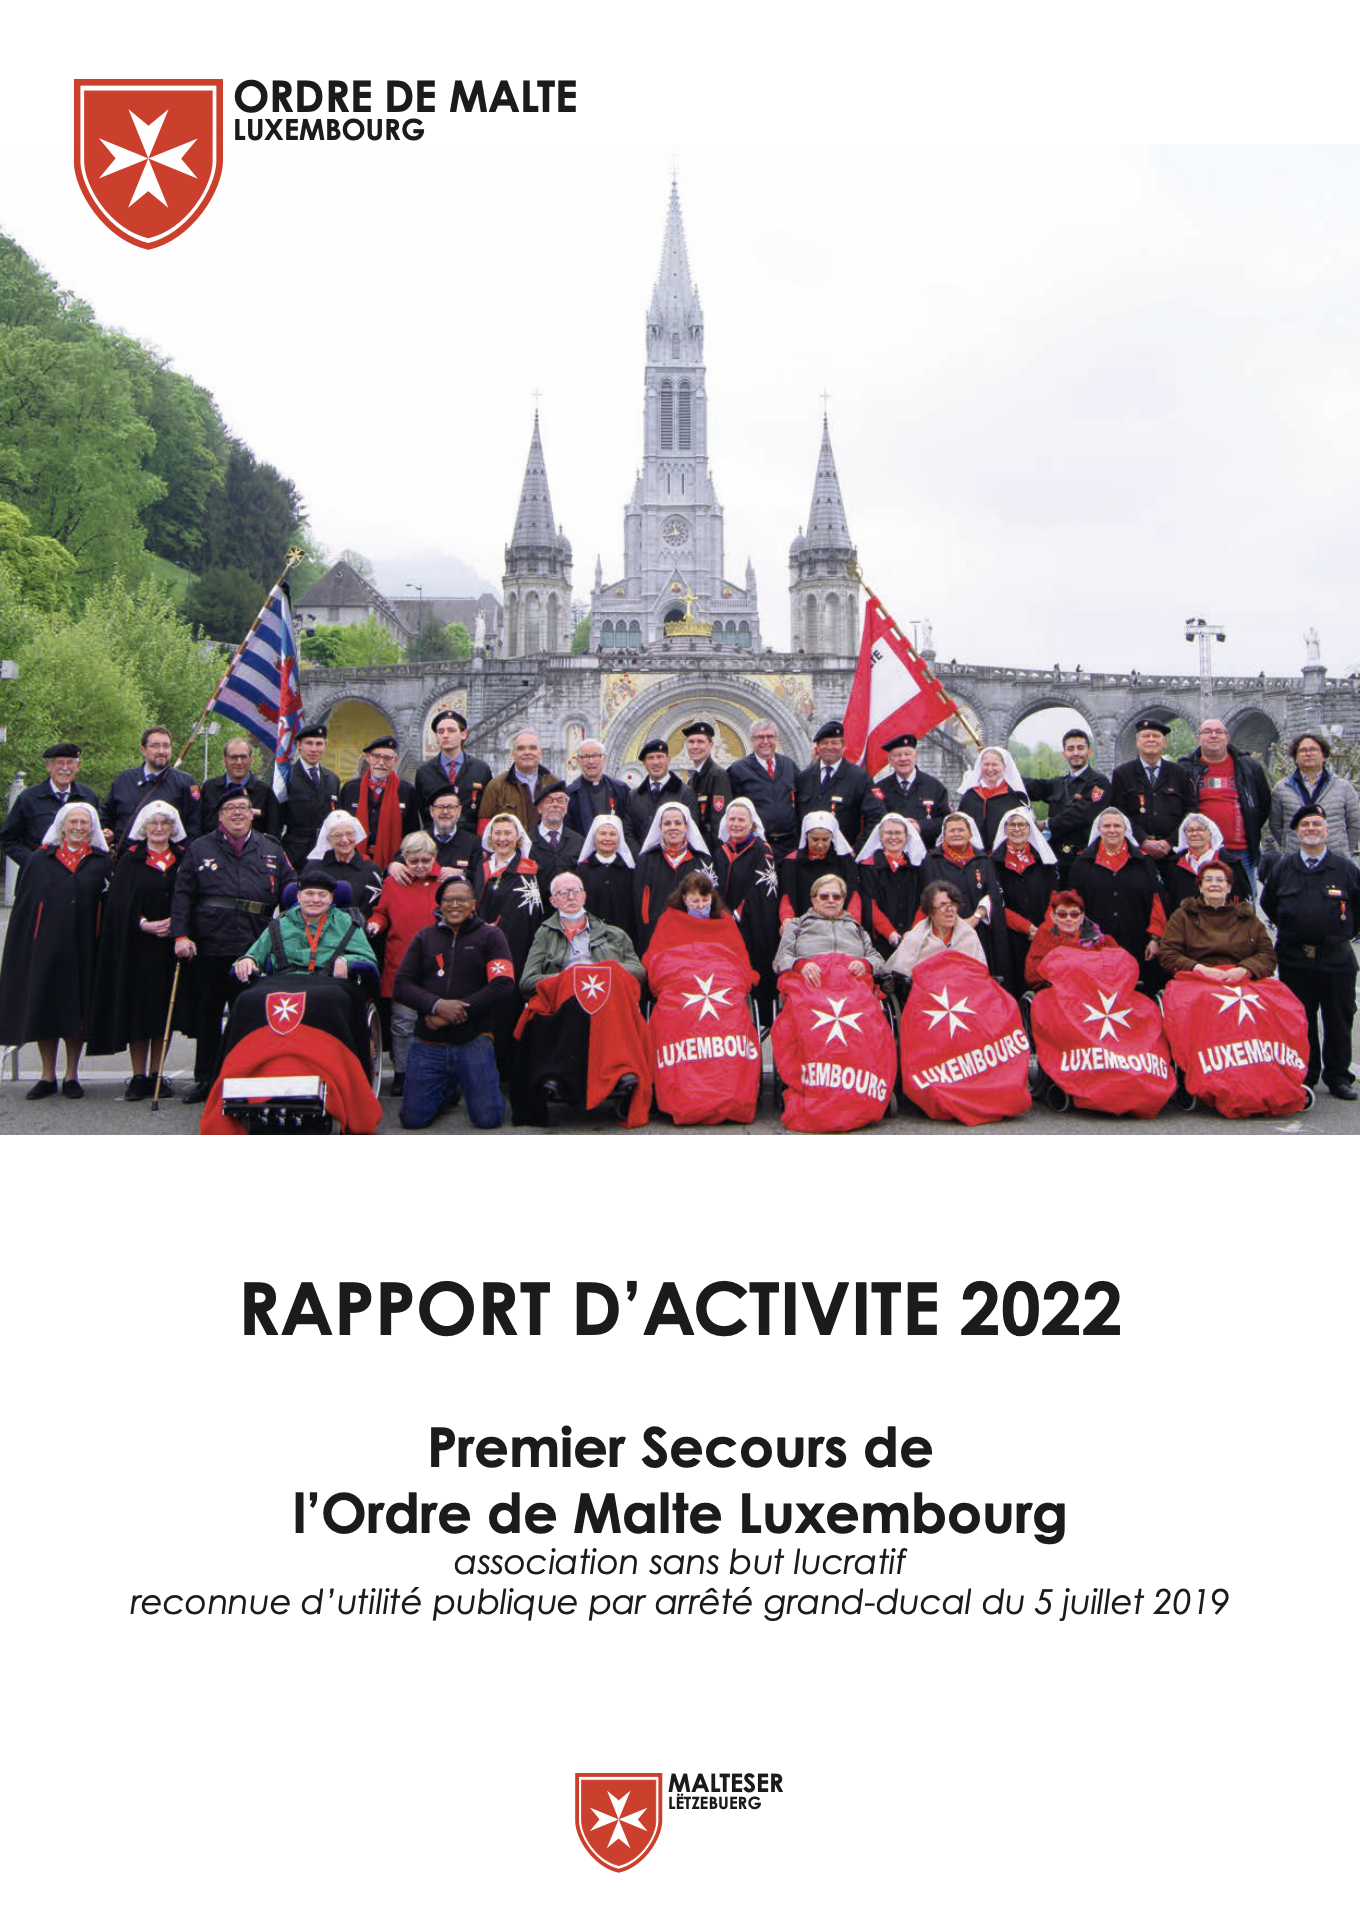 Ordre de Malte Luxembourg 2022